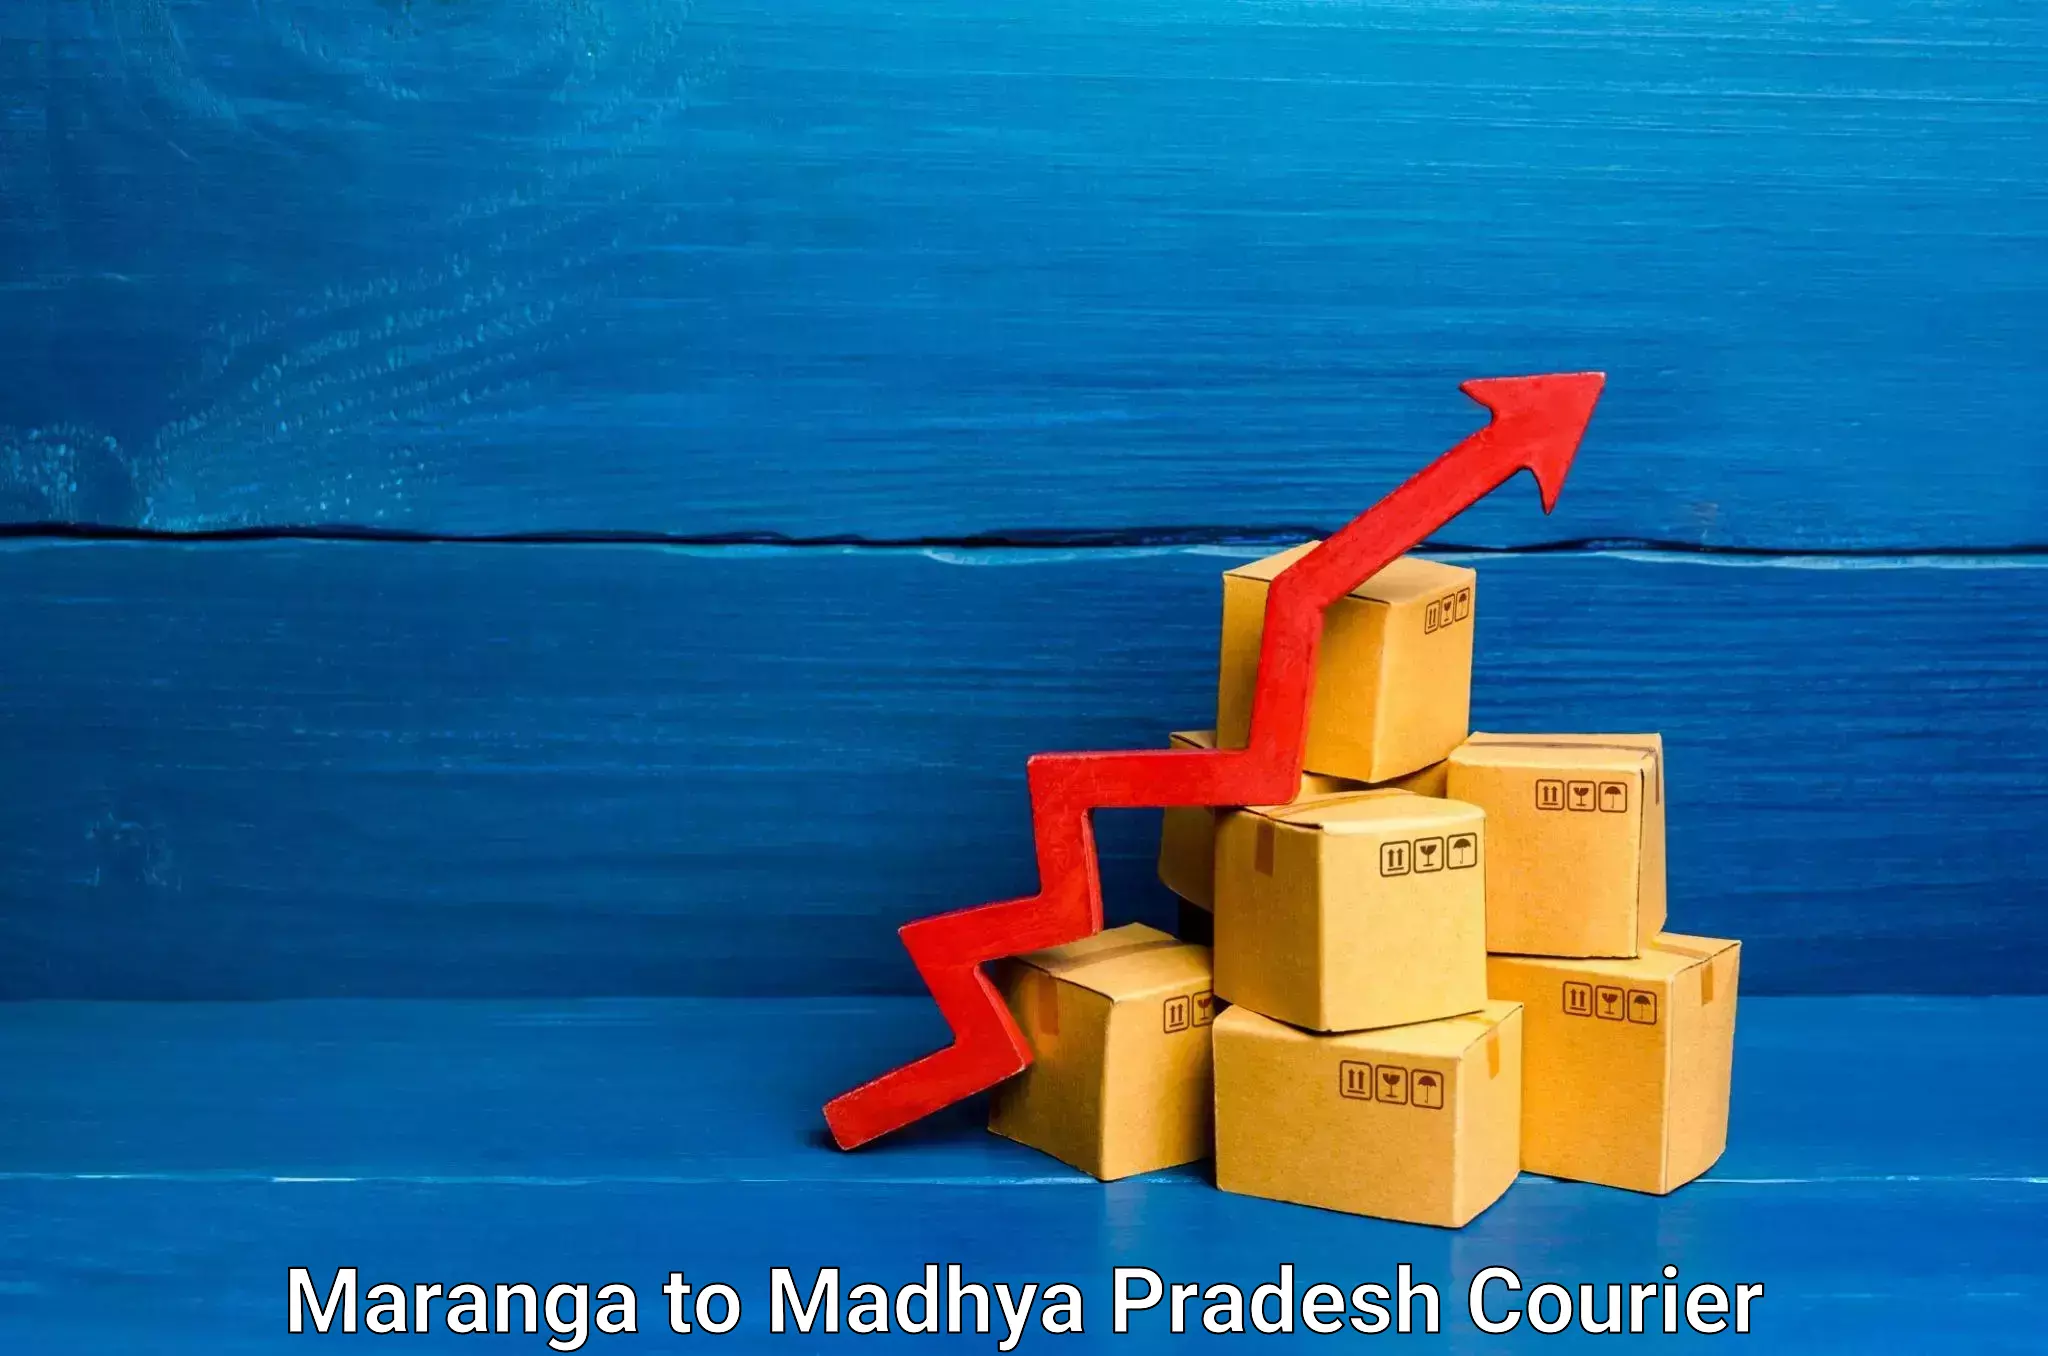 Home goods moving company Maranga to Shivpuri